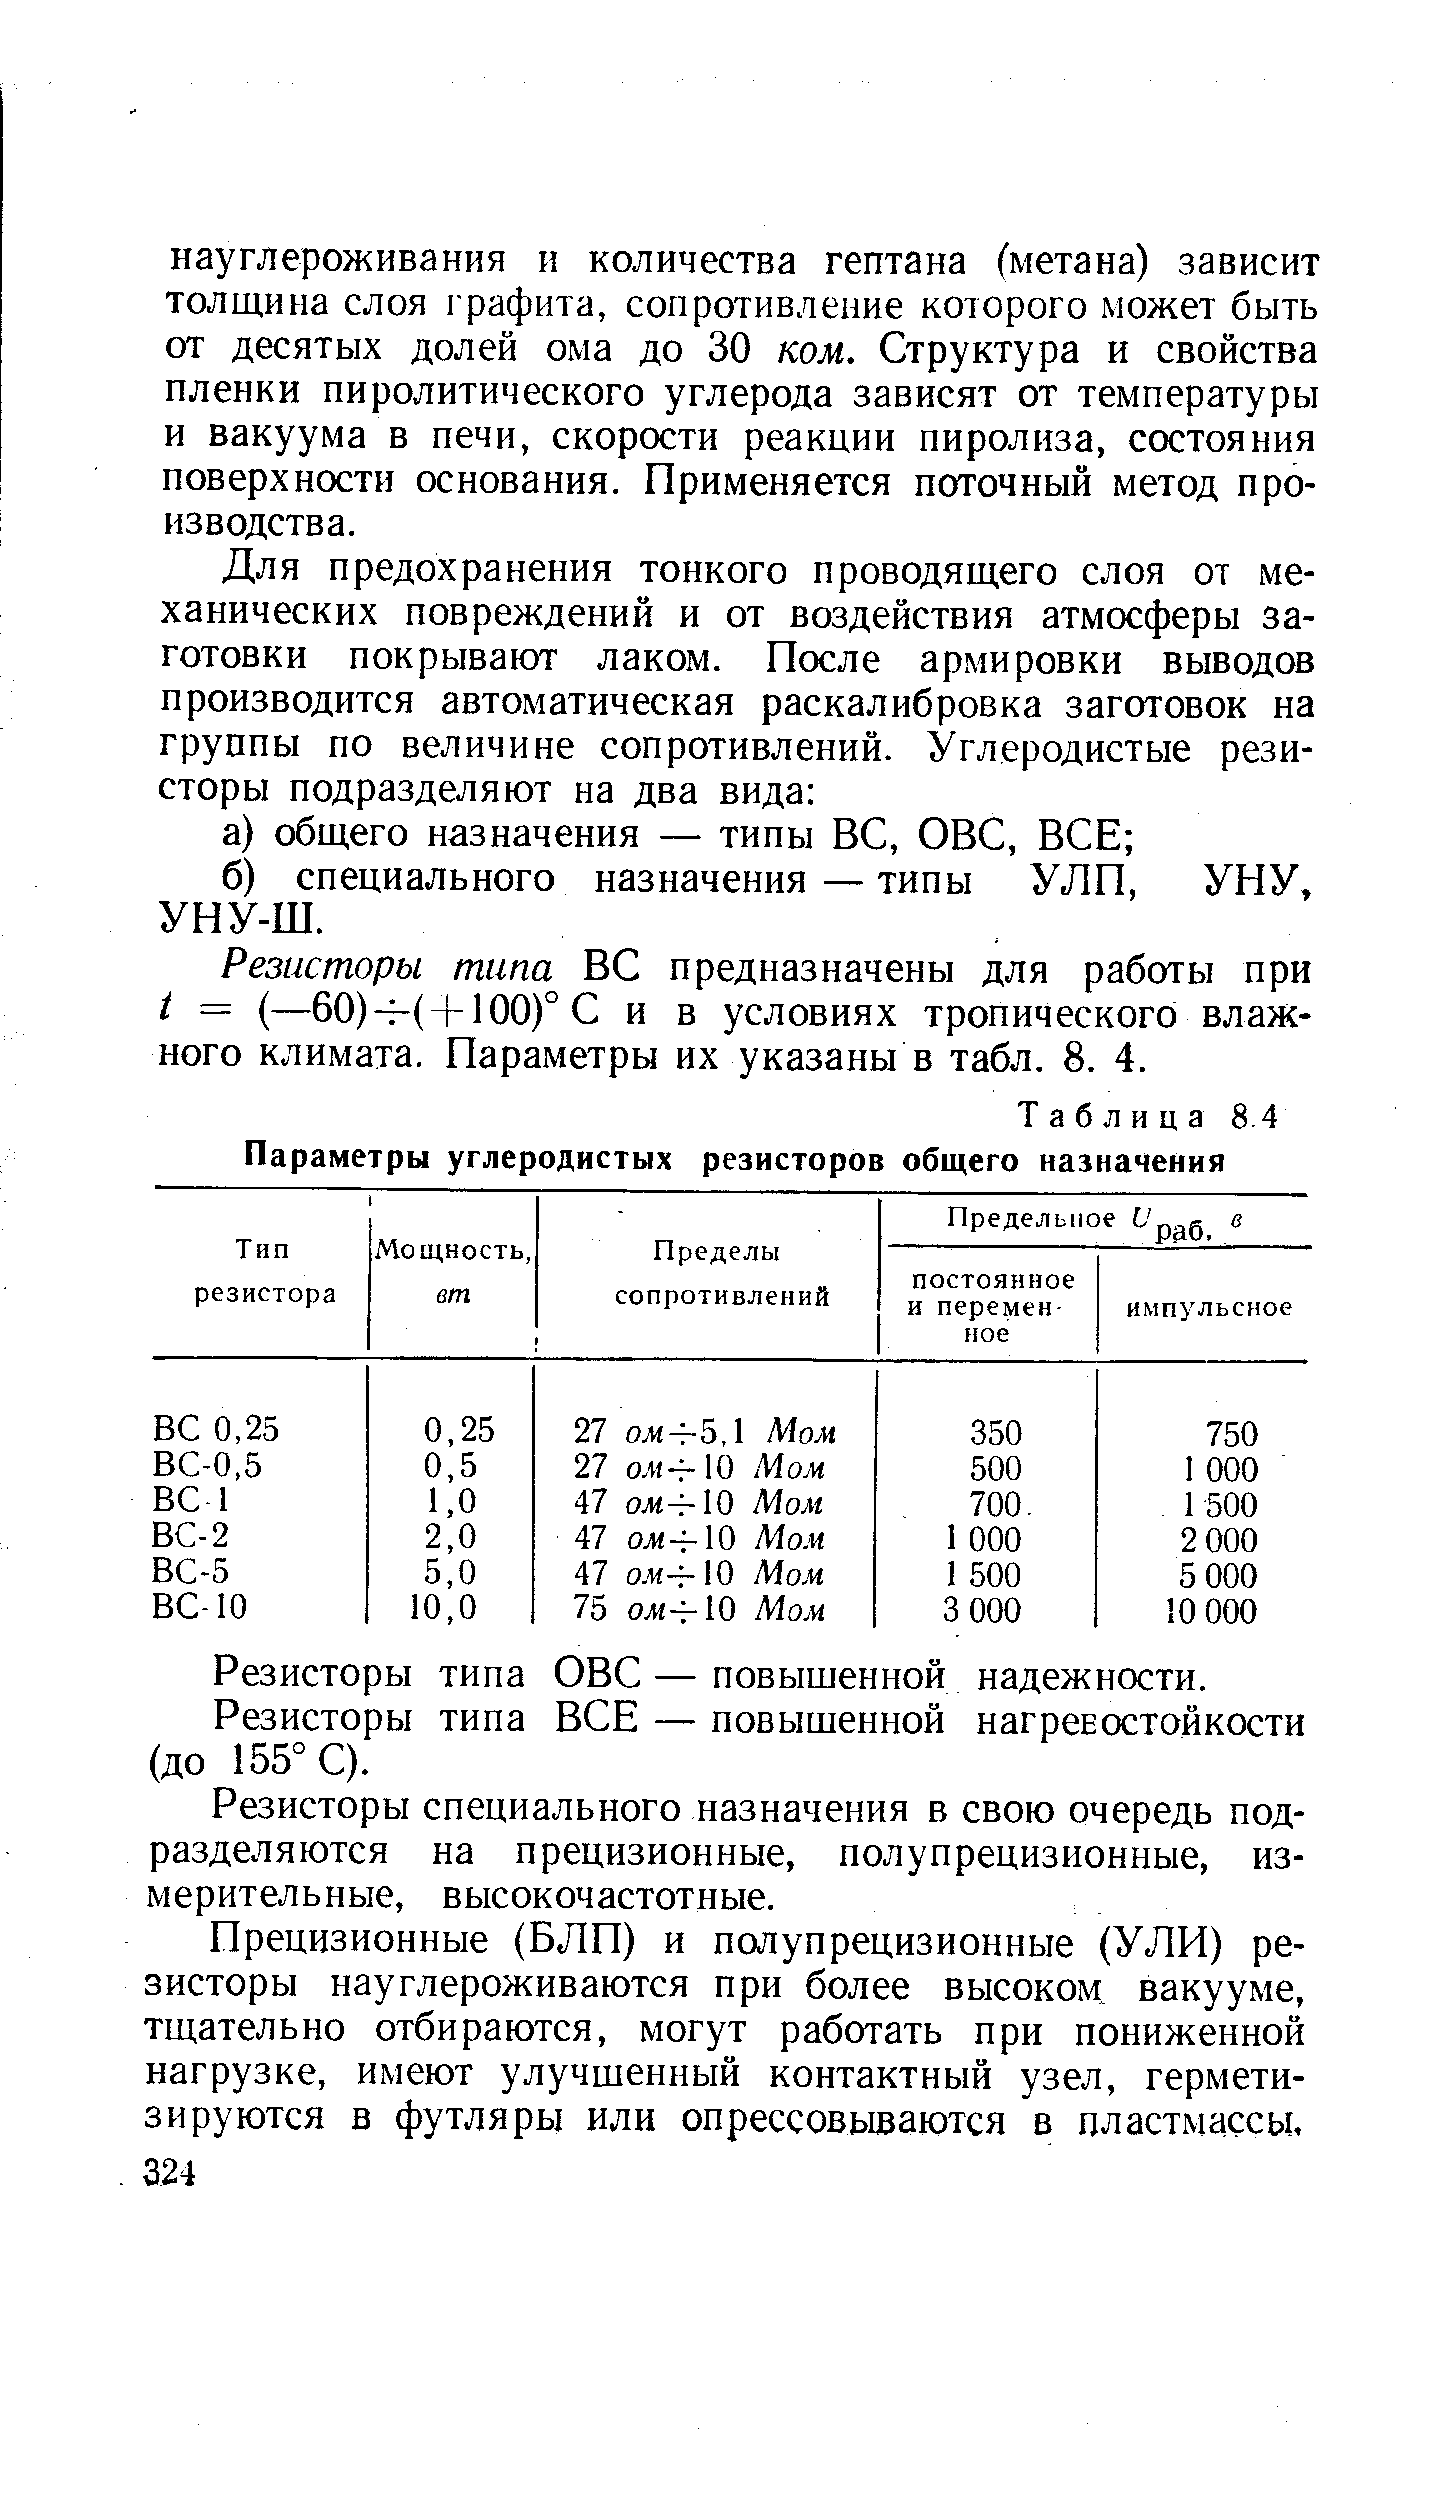 Таблица 8.4 Параметры <a href="/info/230760">углеродистых резисторов</a> общего назначения
